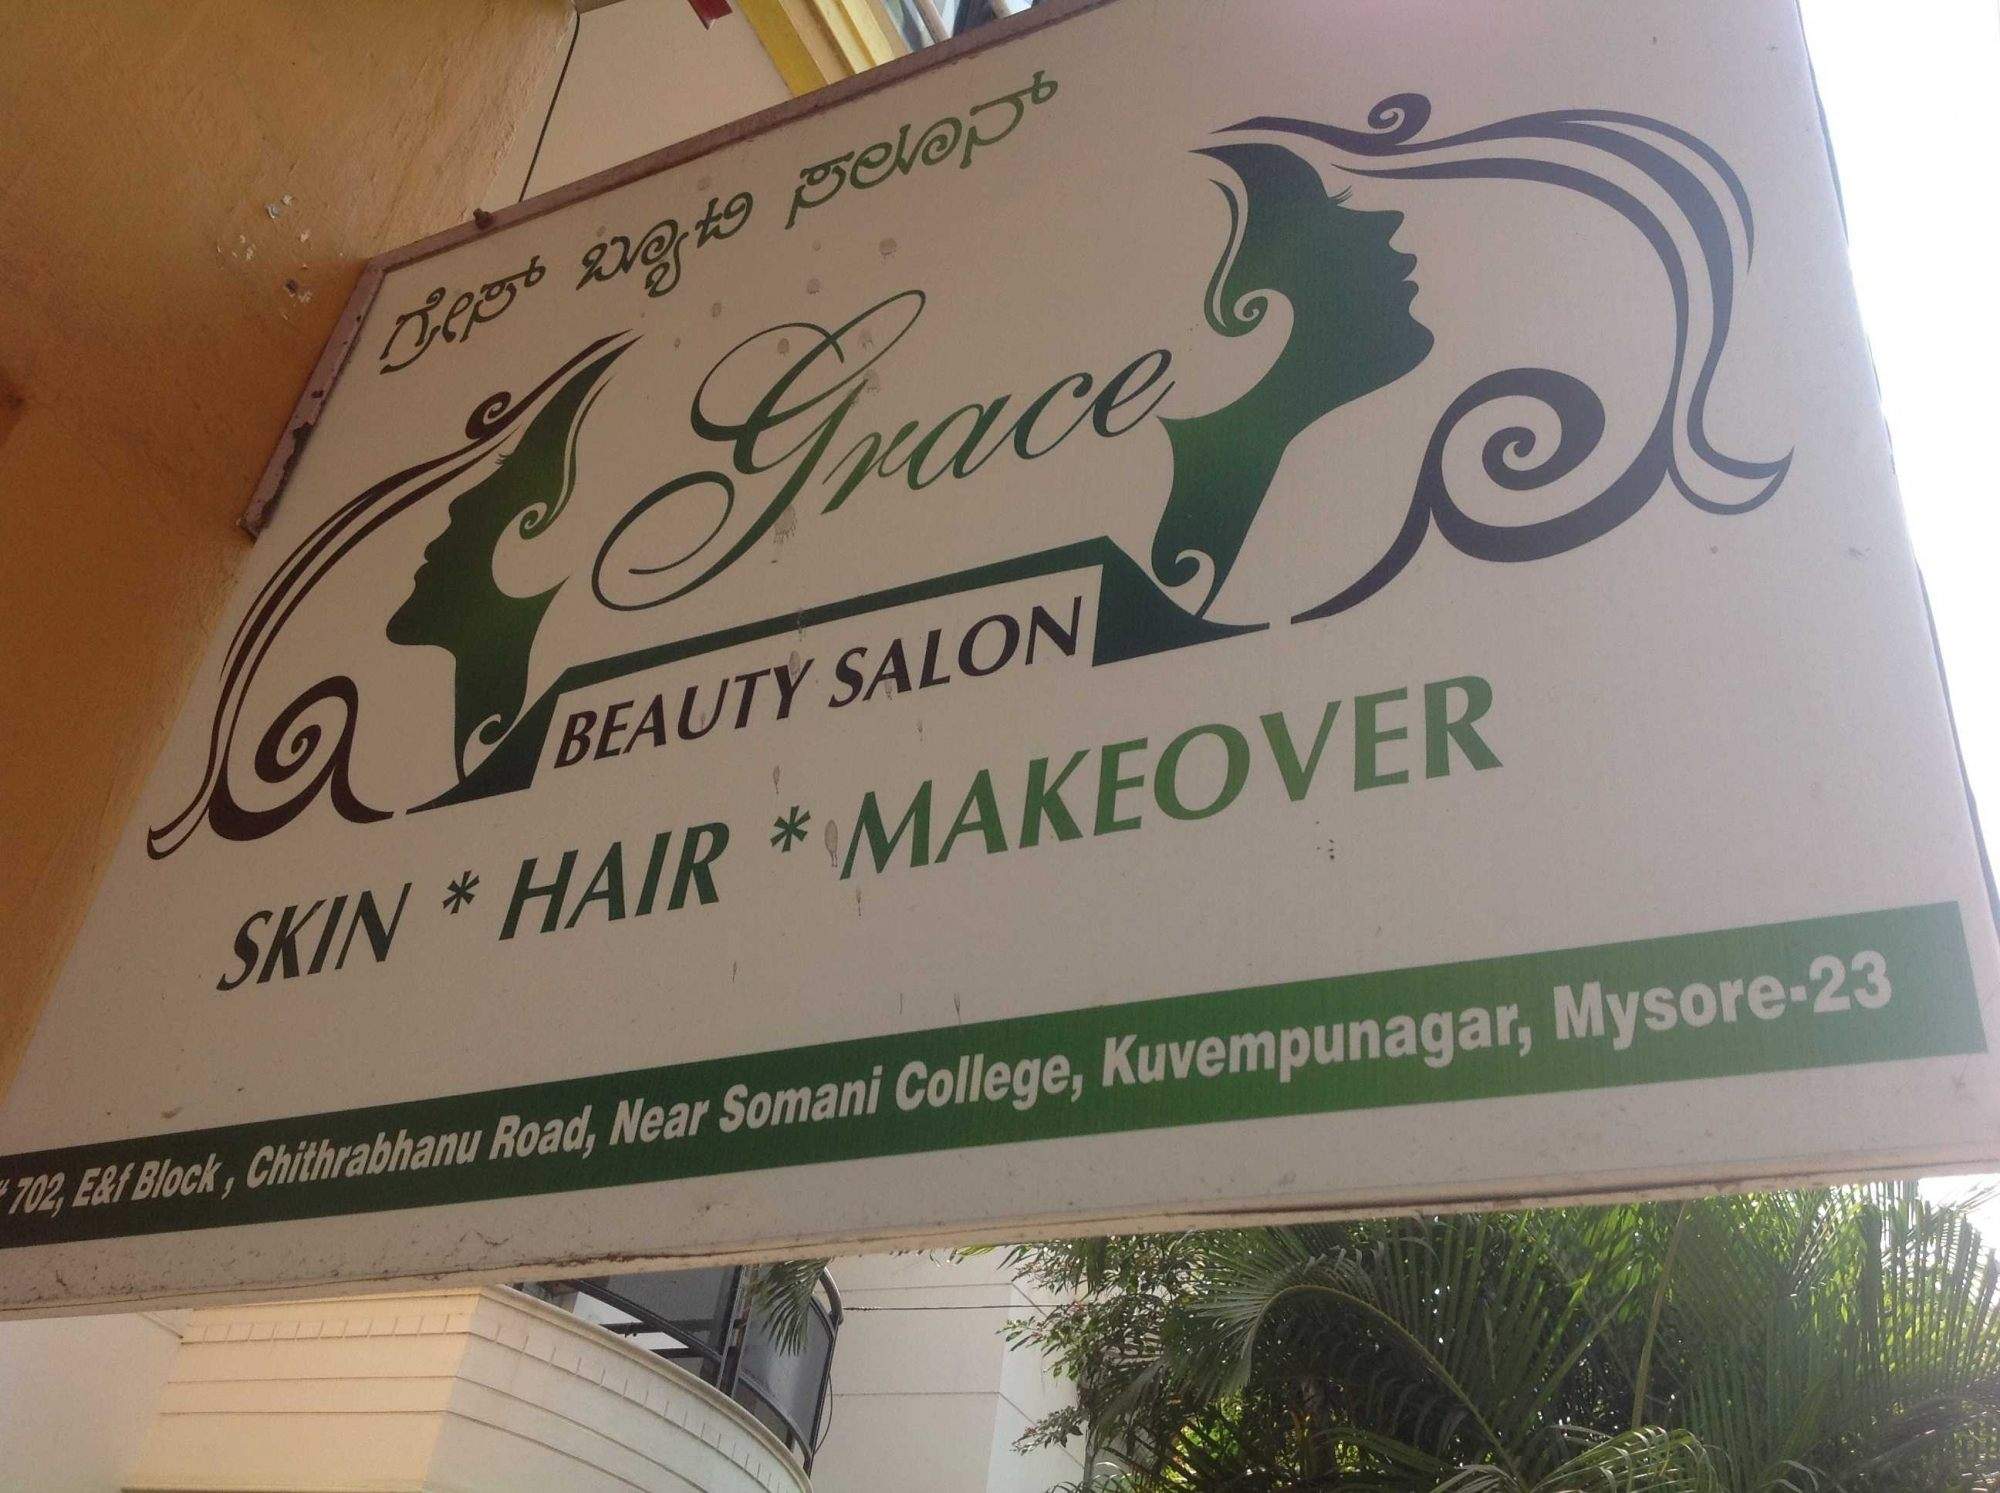 Grace Beauty Logo - Grace Beauty Salon Photos, Kuvempunagar, Mysore- Pictures & Images ...